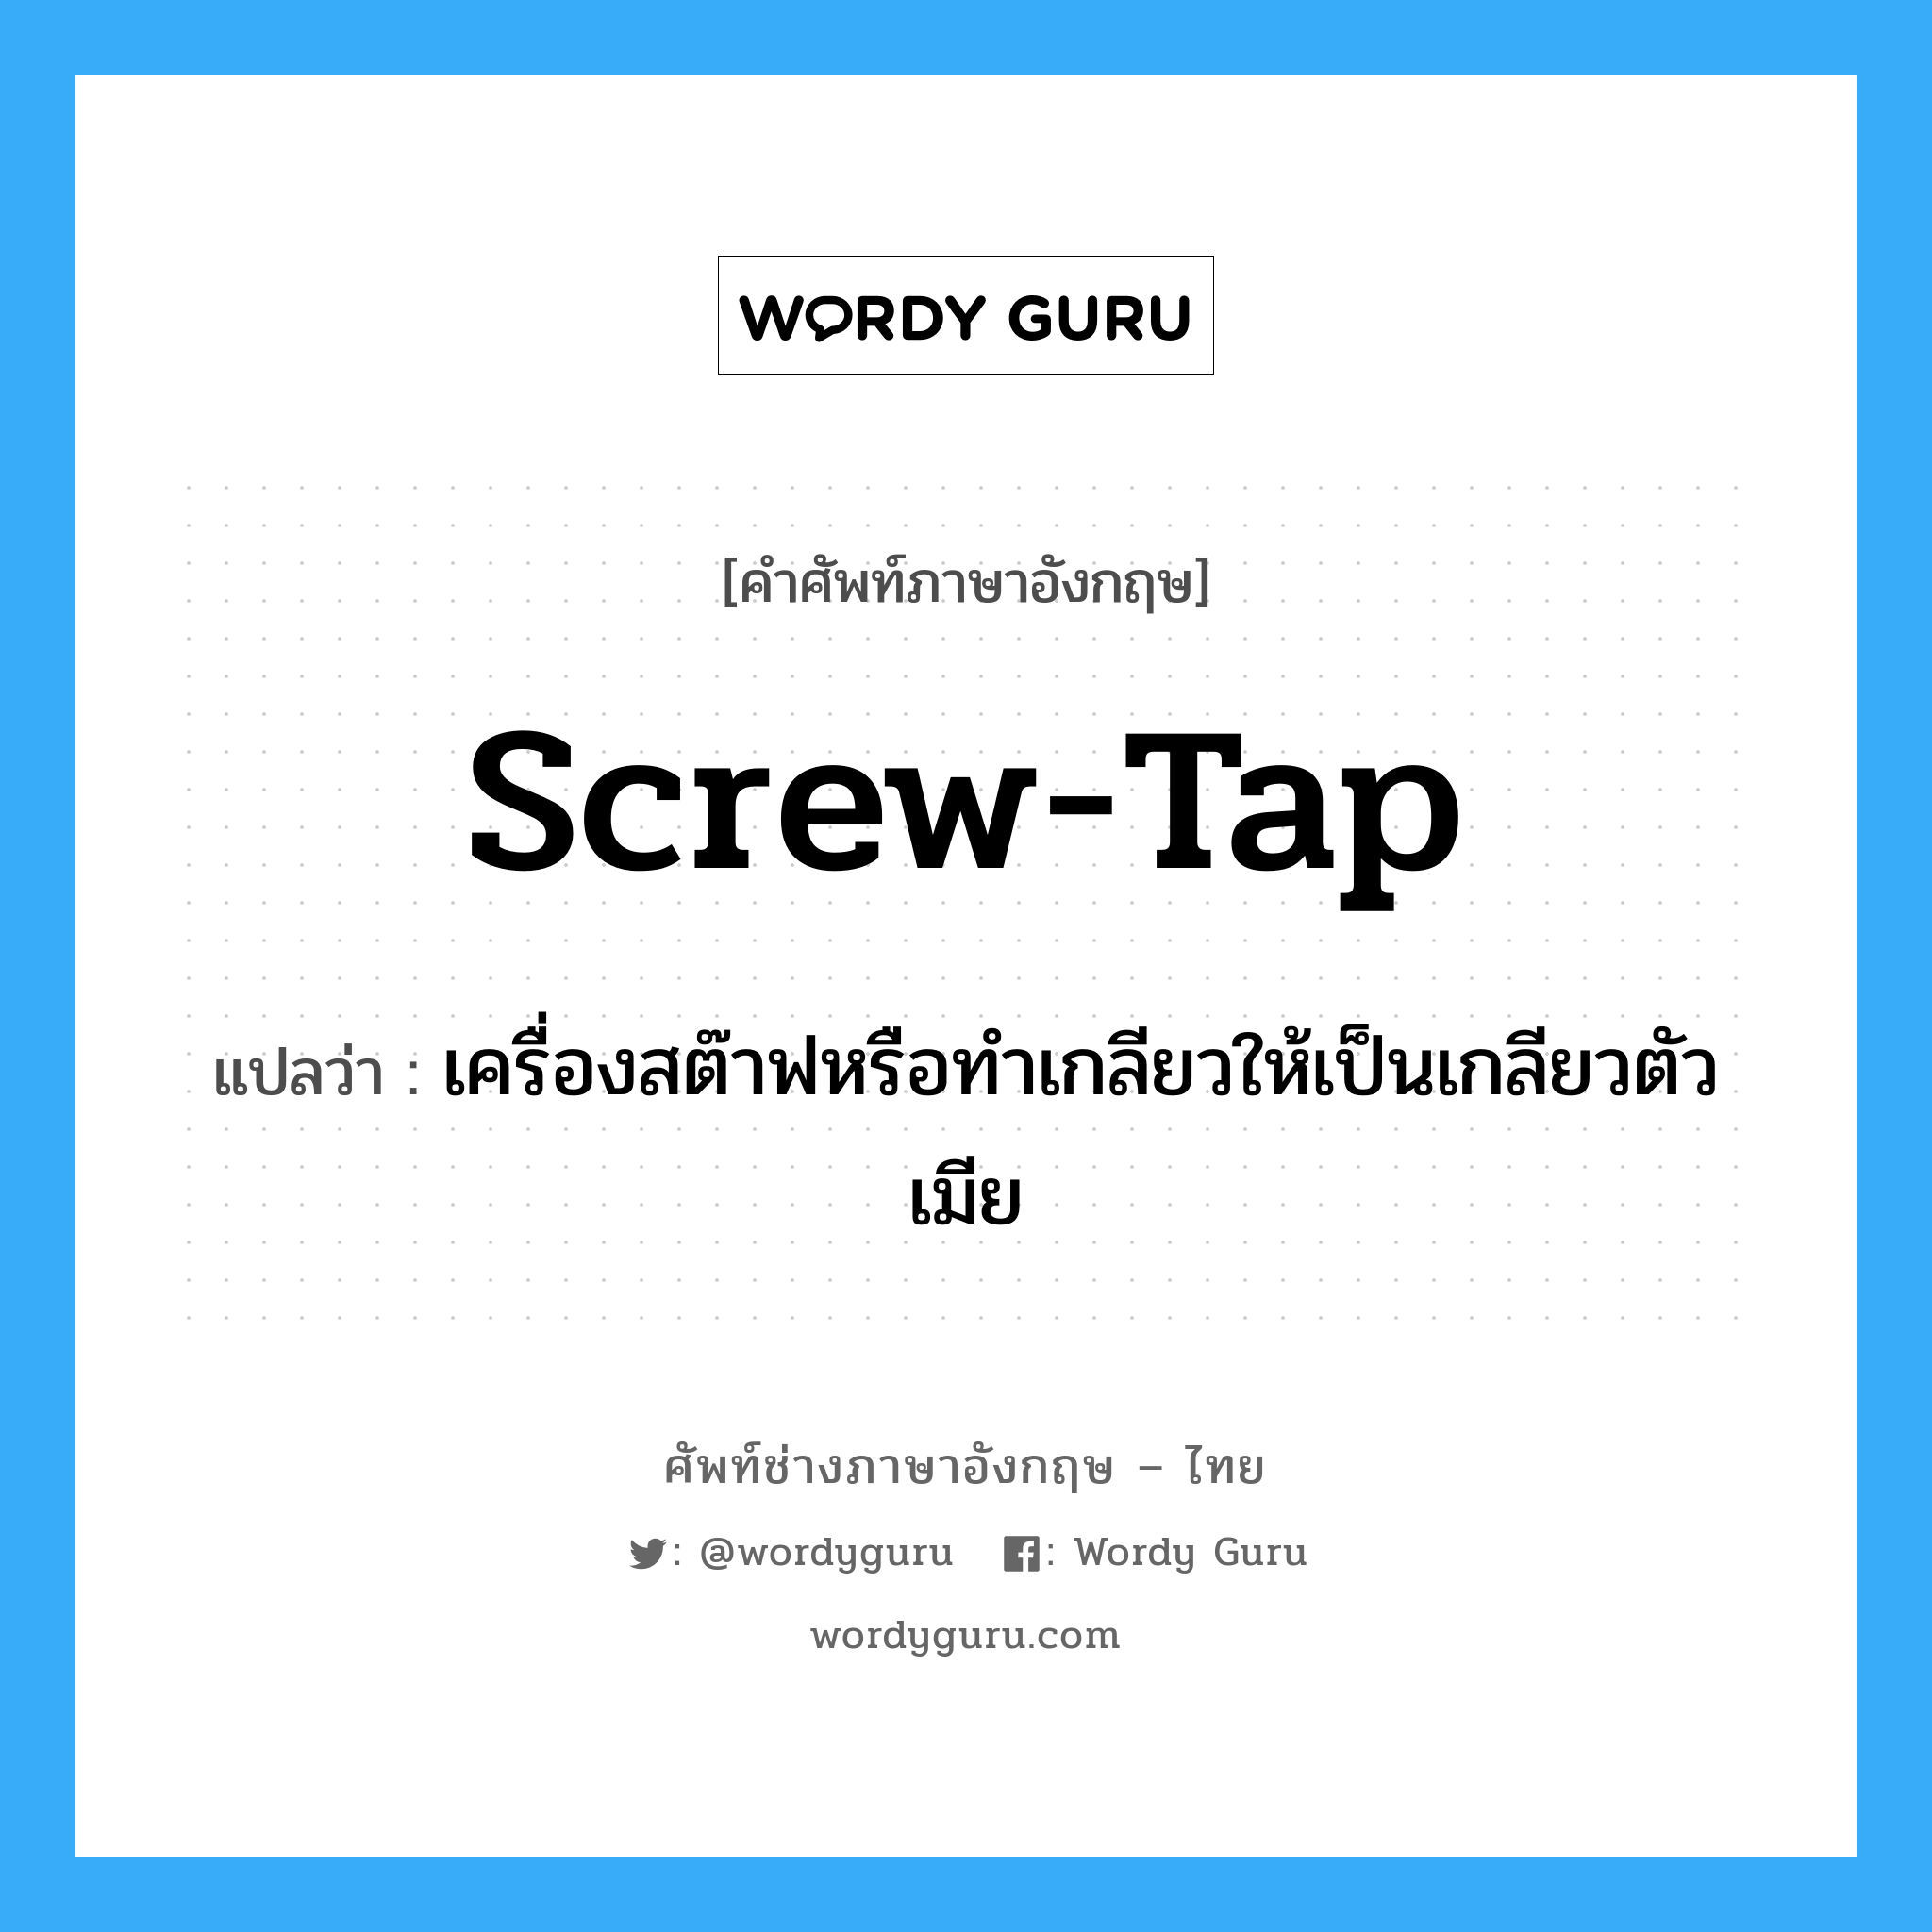 screw-tap แปลว่า?, คำศัพท์ช่างภาษาอังกฤษ - ไทย screw-tap คำศัพท์ภาษาอังกฤษ screw-tap แปลว่า เครื่องสต๊าฟหรือทำเกลียวให้เป็นเกลียวตัวเมีย